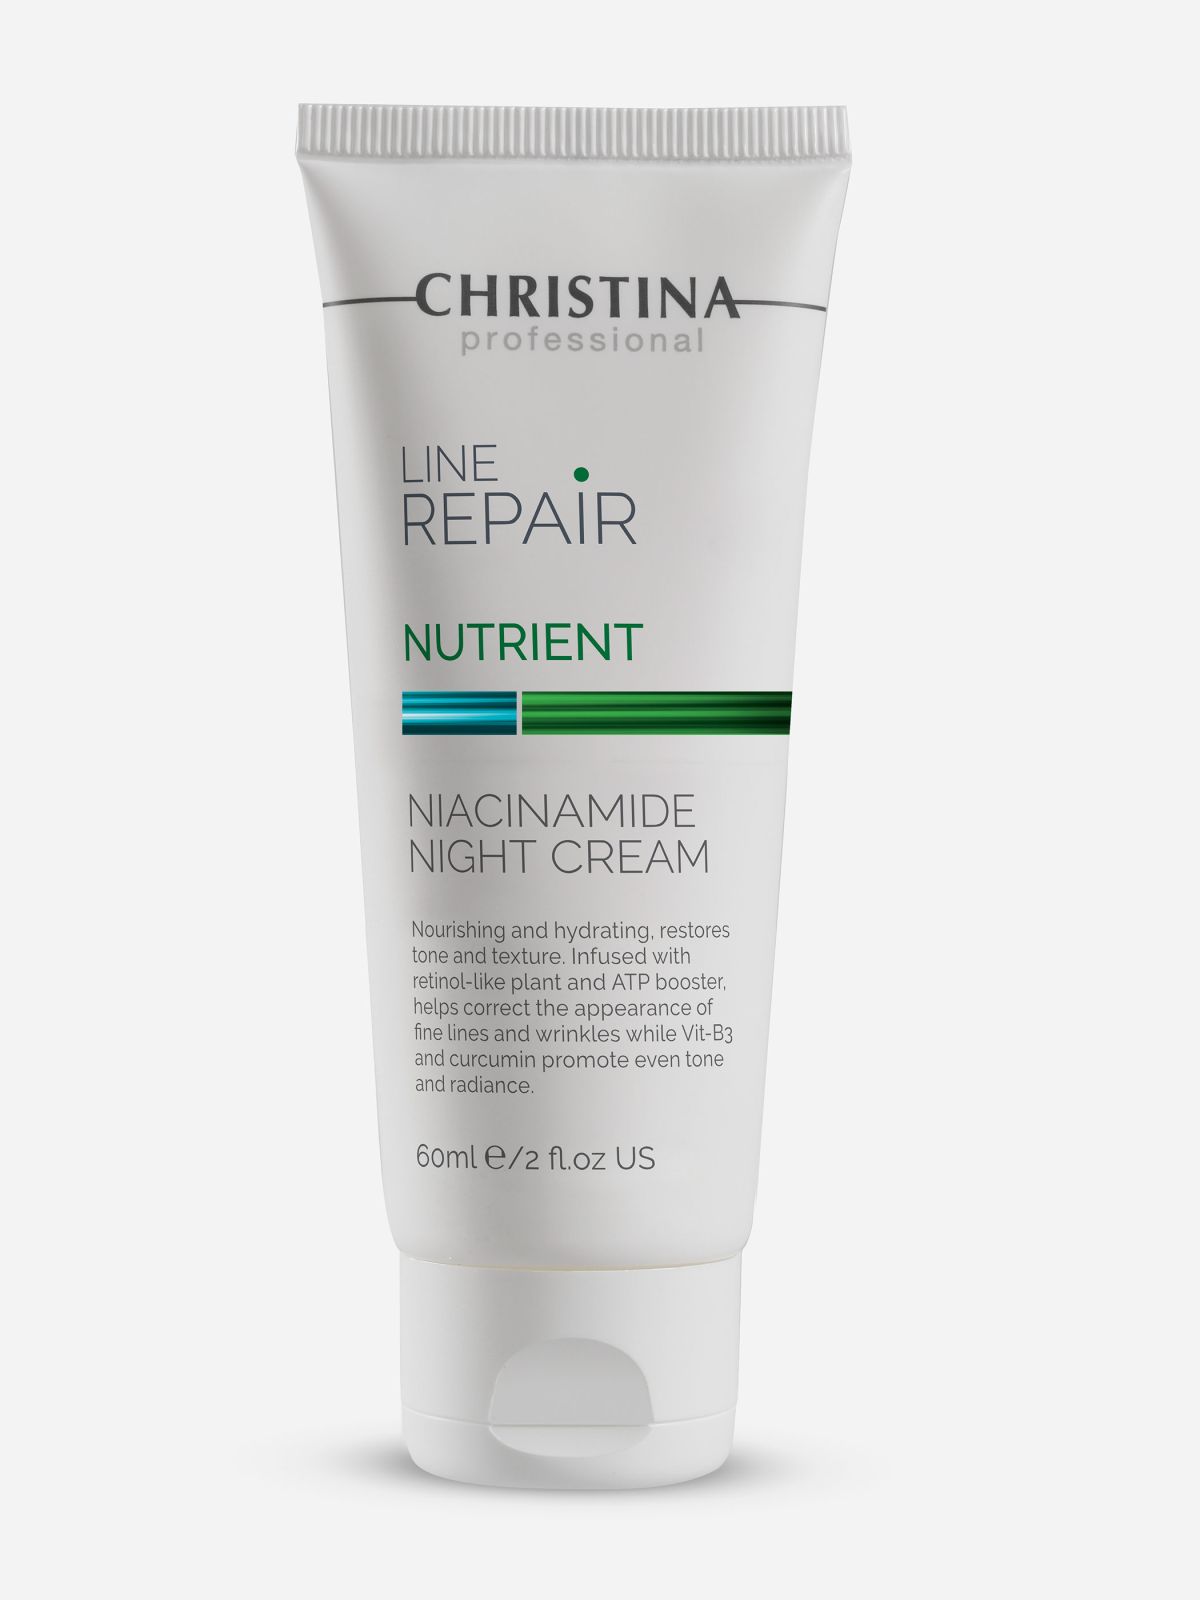  קרם לילה להמרצת העור Line Repair-Nutrient-Niacinamide Night Cream 60 של CHRISTINA